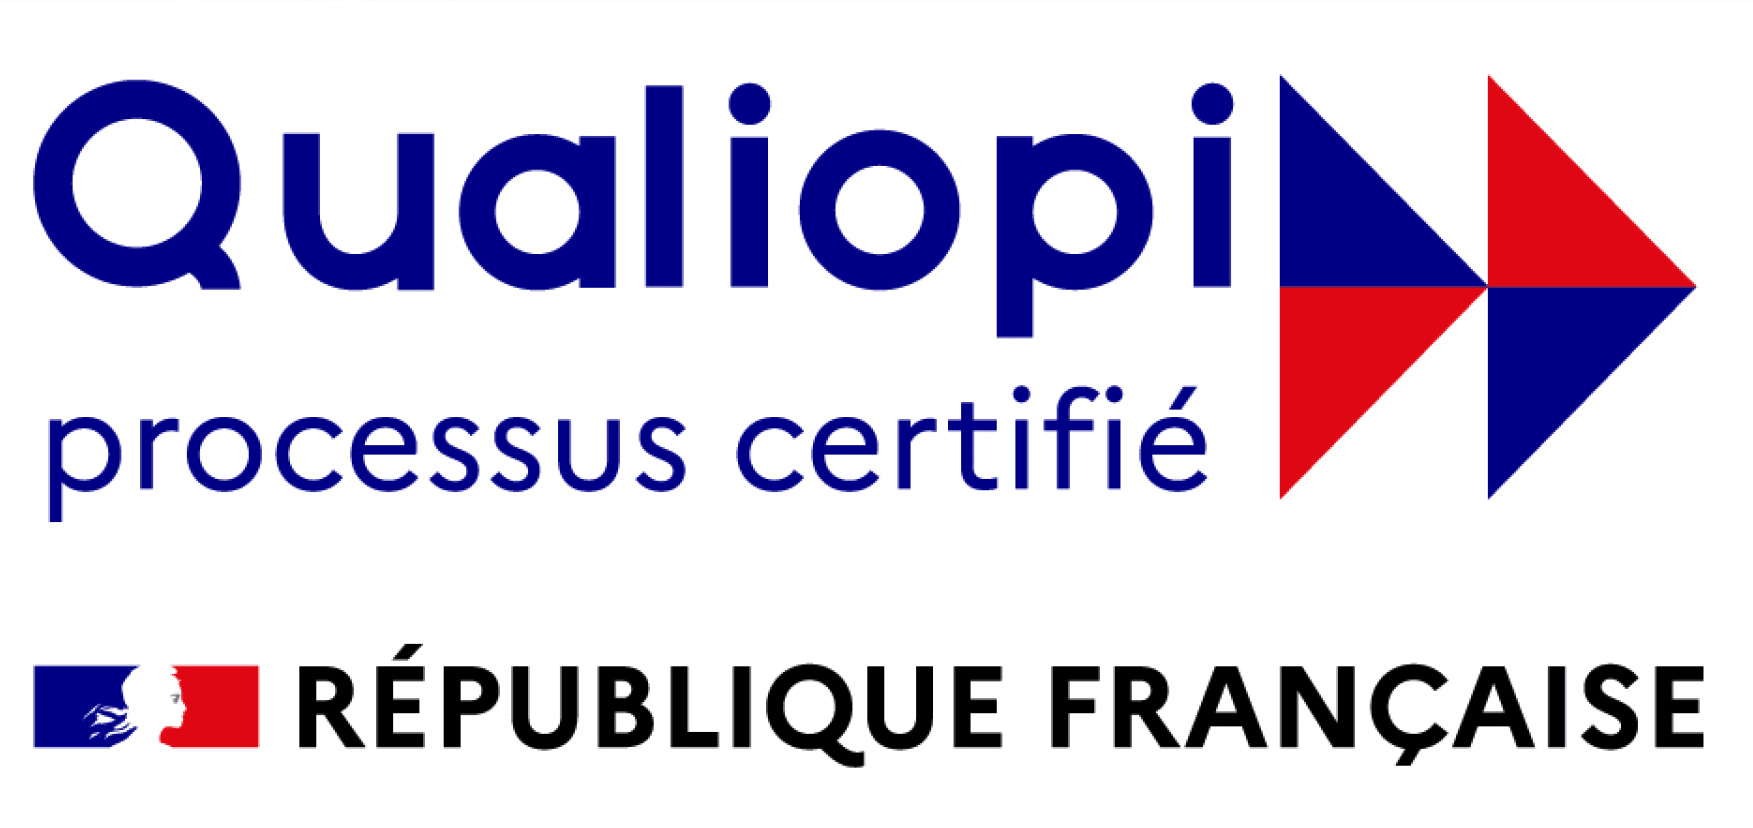 Logo Qualiopi sur fond transparent, symbole de certification de qualité dans la formation professionnelle.